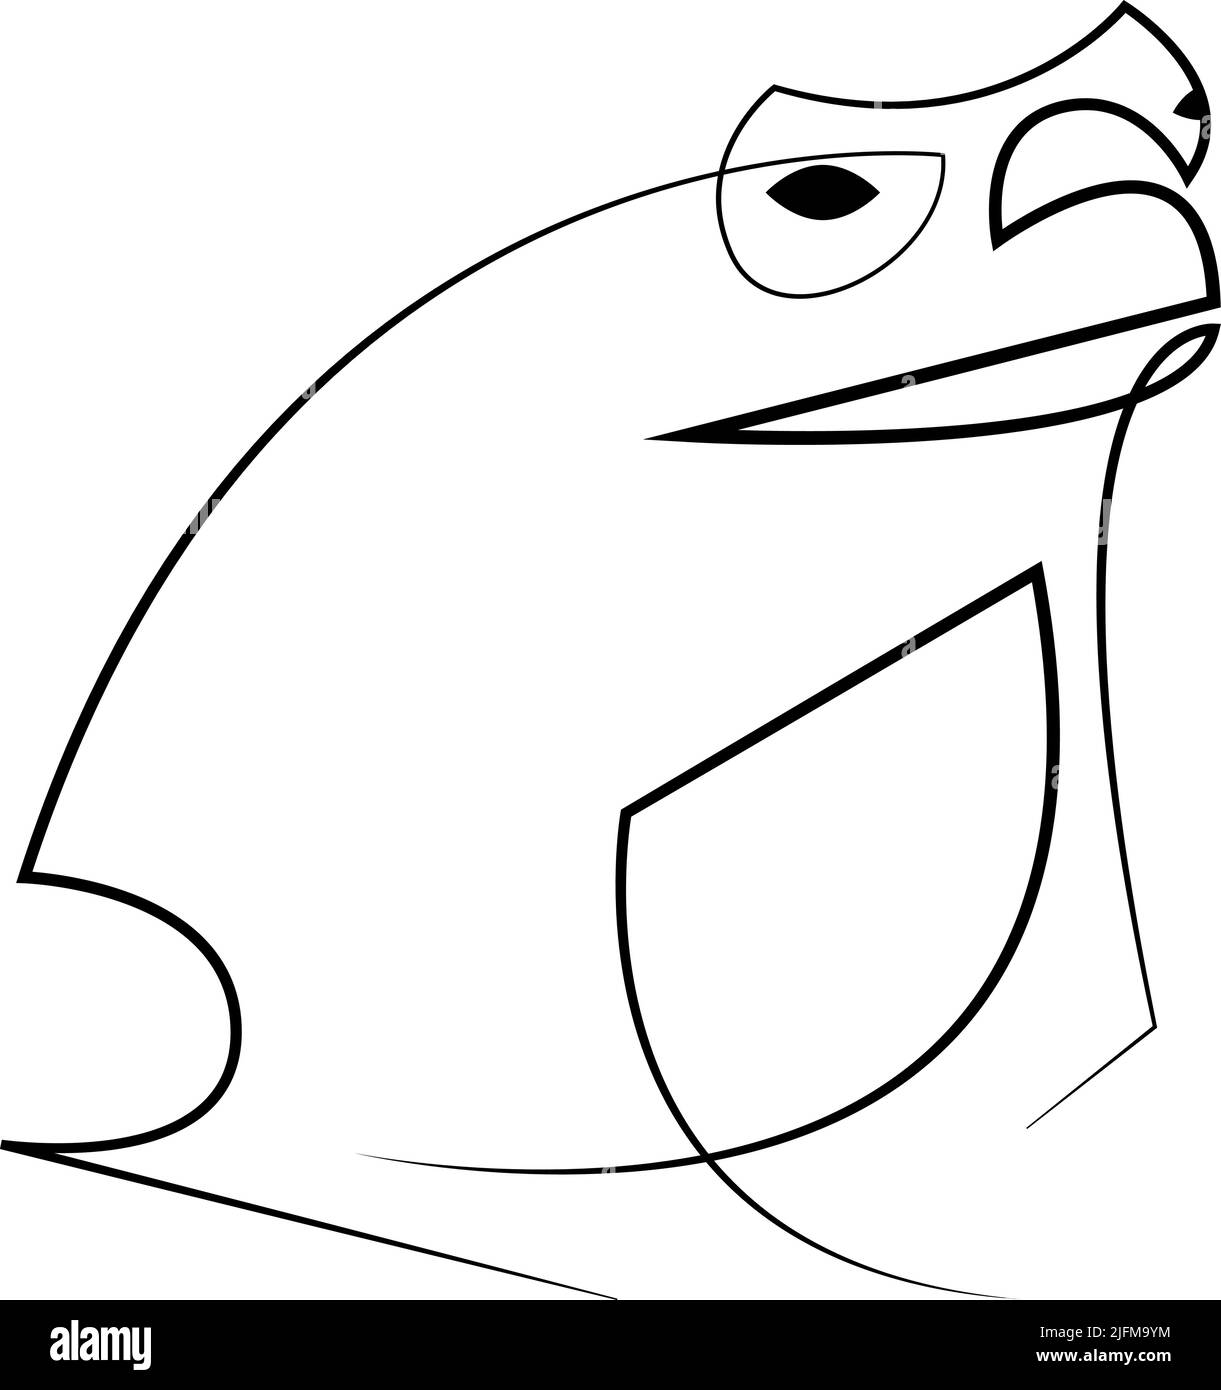 Logotipo de Frog. Dibujo lineal de rana animal. Diseño de línea de sapo. Ilustración vectorial Ilustración del Vector